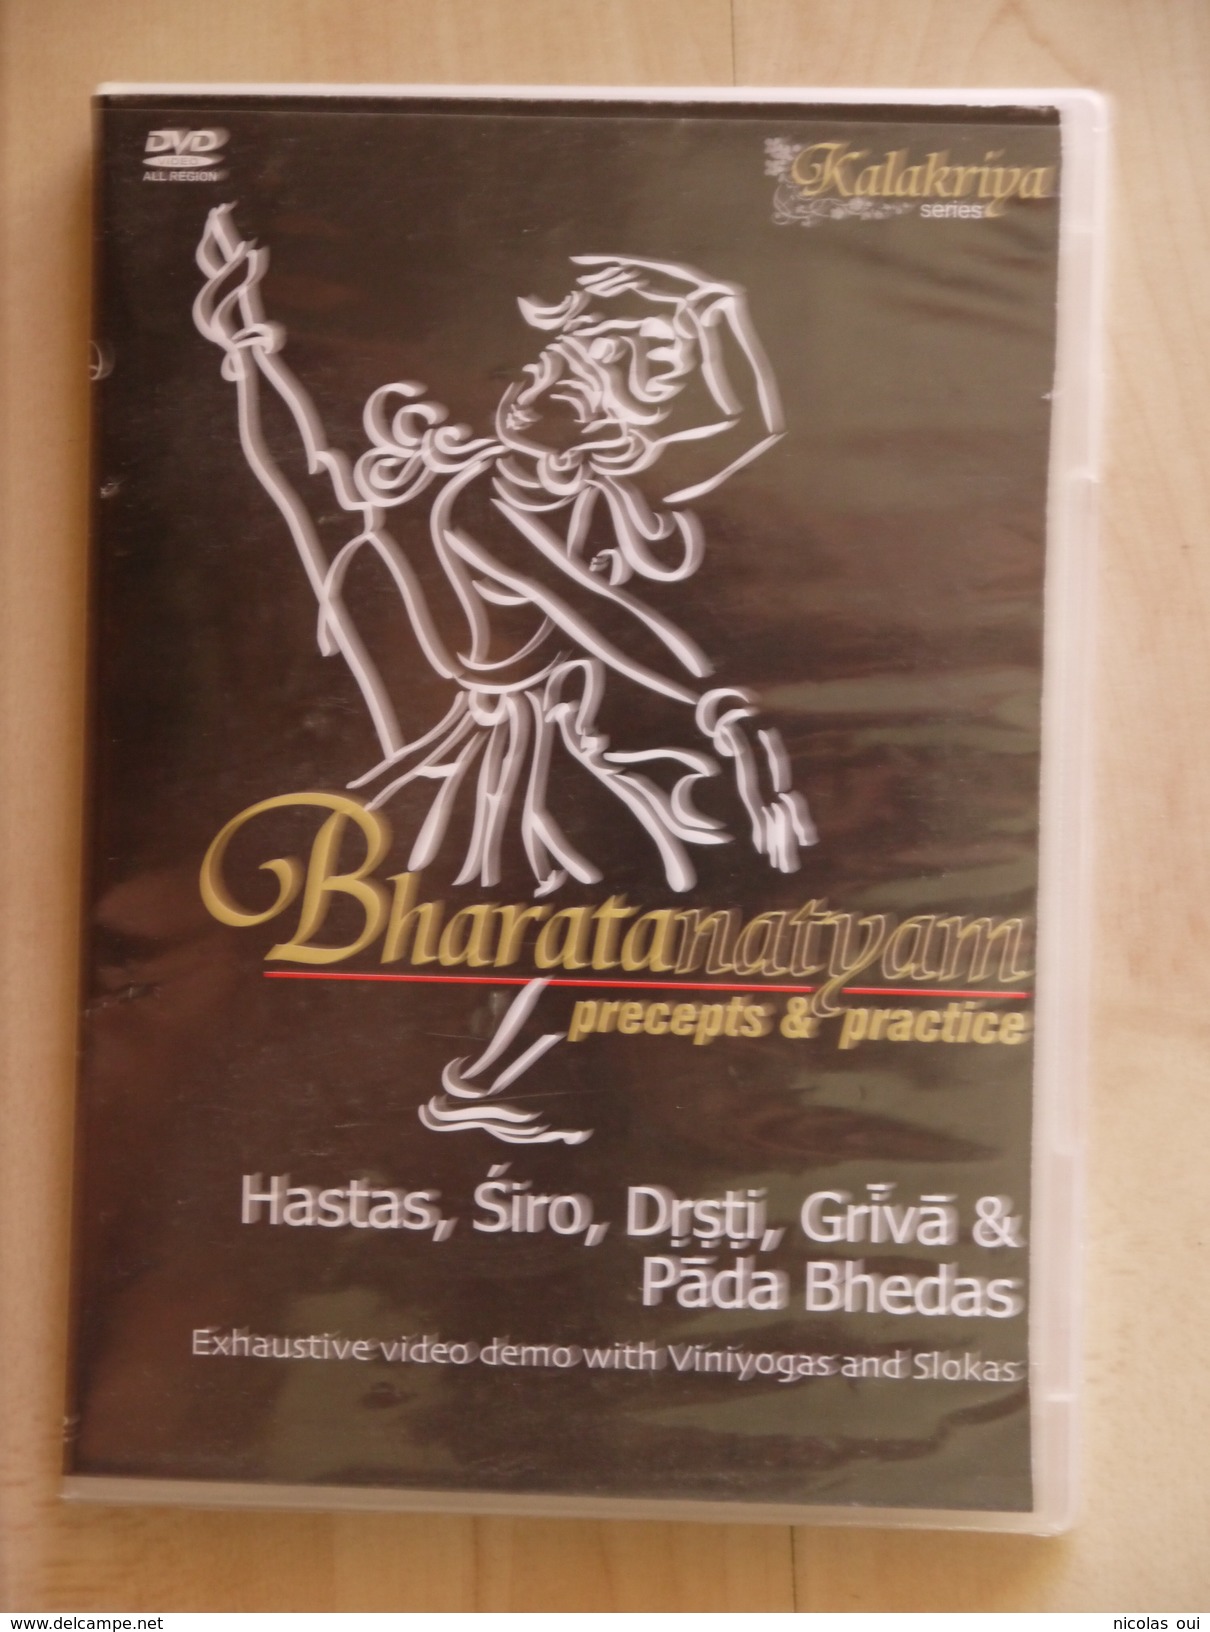 KALAKRIYA  BARATANATYAM   HASTAS  SIRO  DRSTI  GRIVA  PADA BHEDAS - Documentary